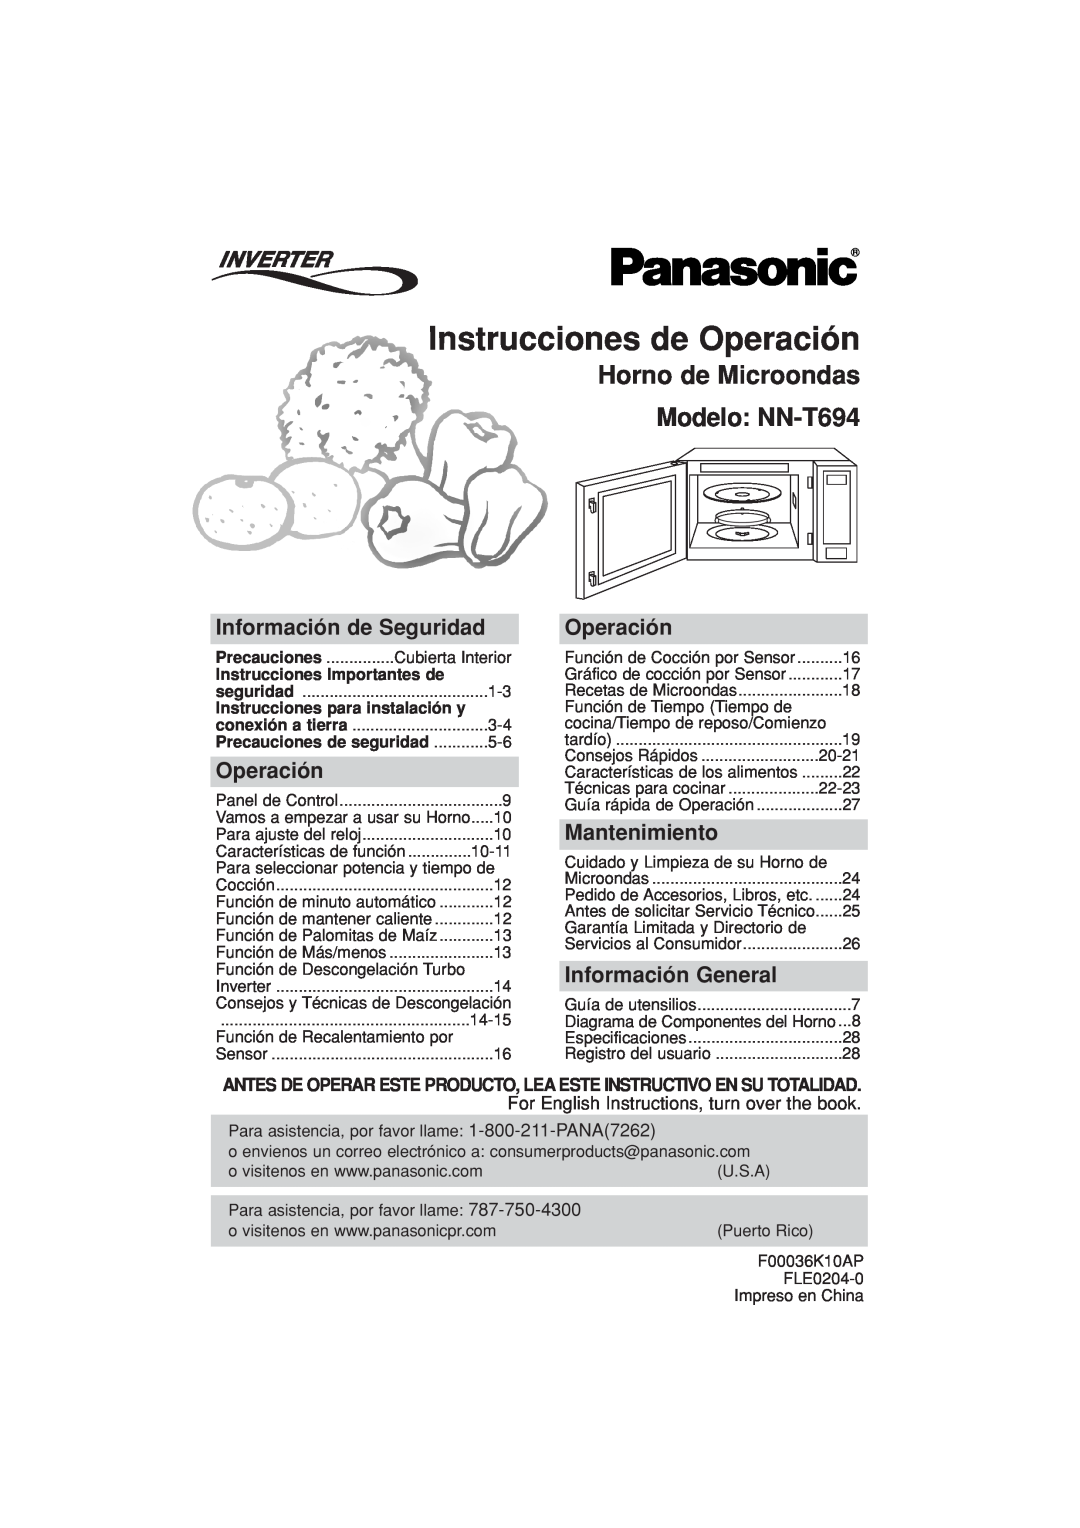 Panasonic Instrucciones de Operación, Horno de Microondas Modelo NN-T694, Información de Seguridad, Mantenimiento 